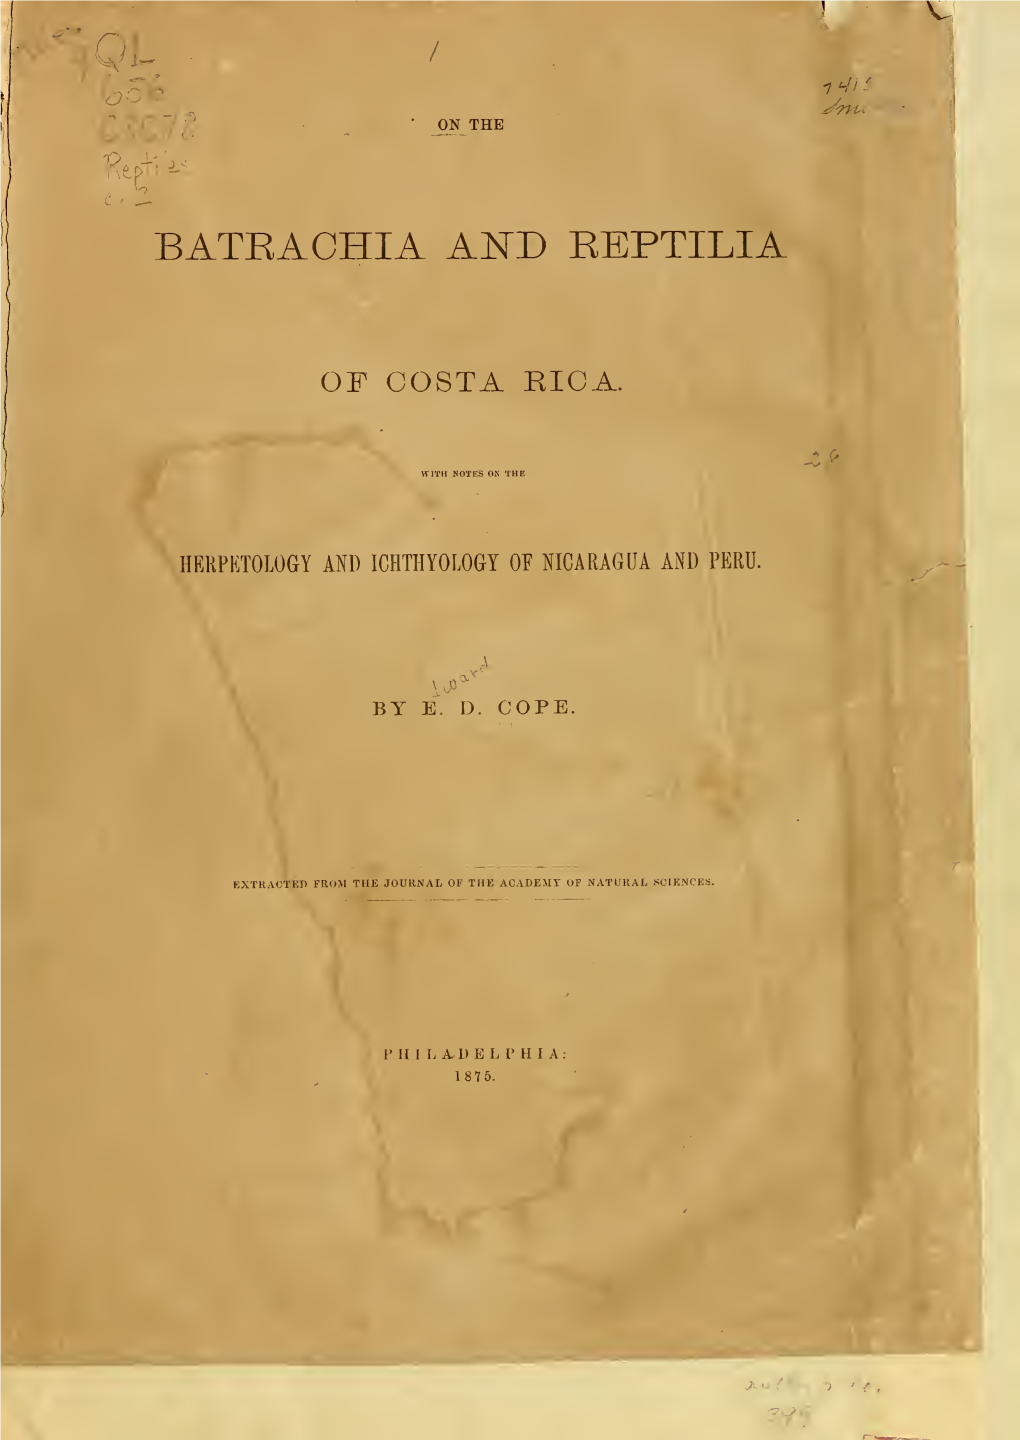 Cope, E.D. 1876. on the Batrachia and Reptilia of Costa Rica. In